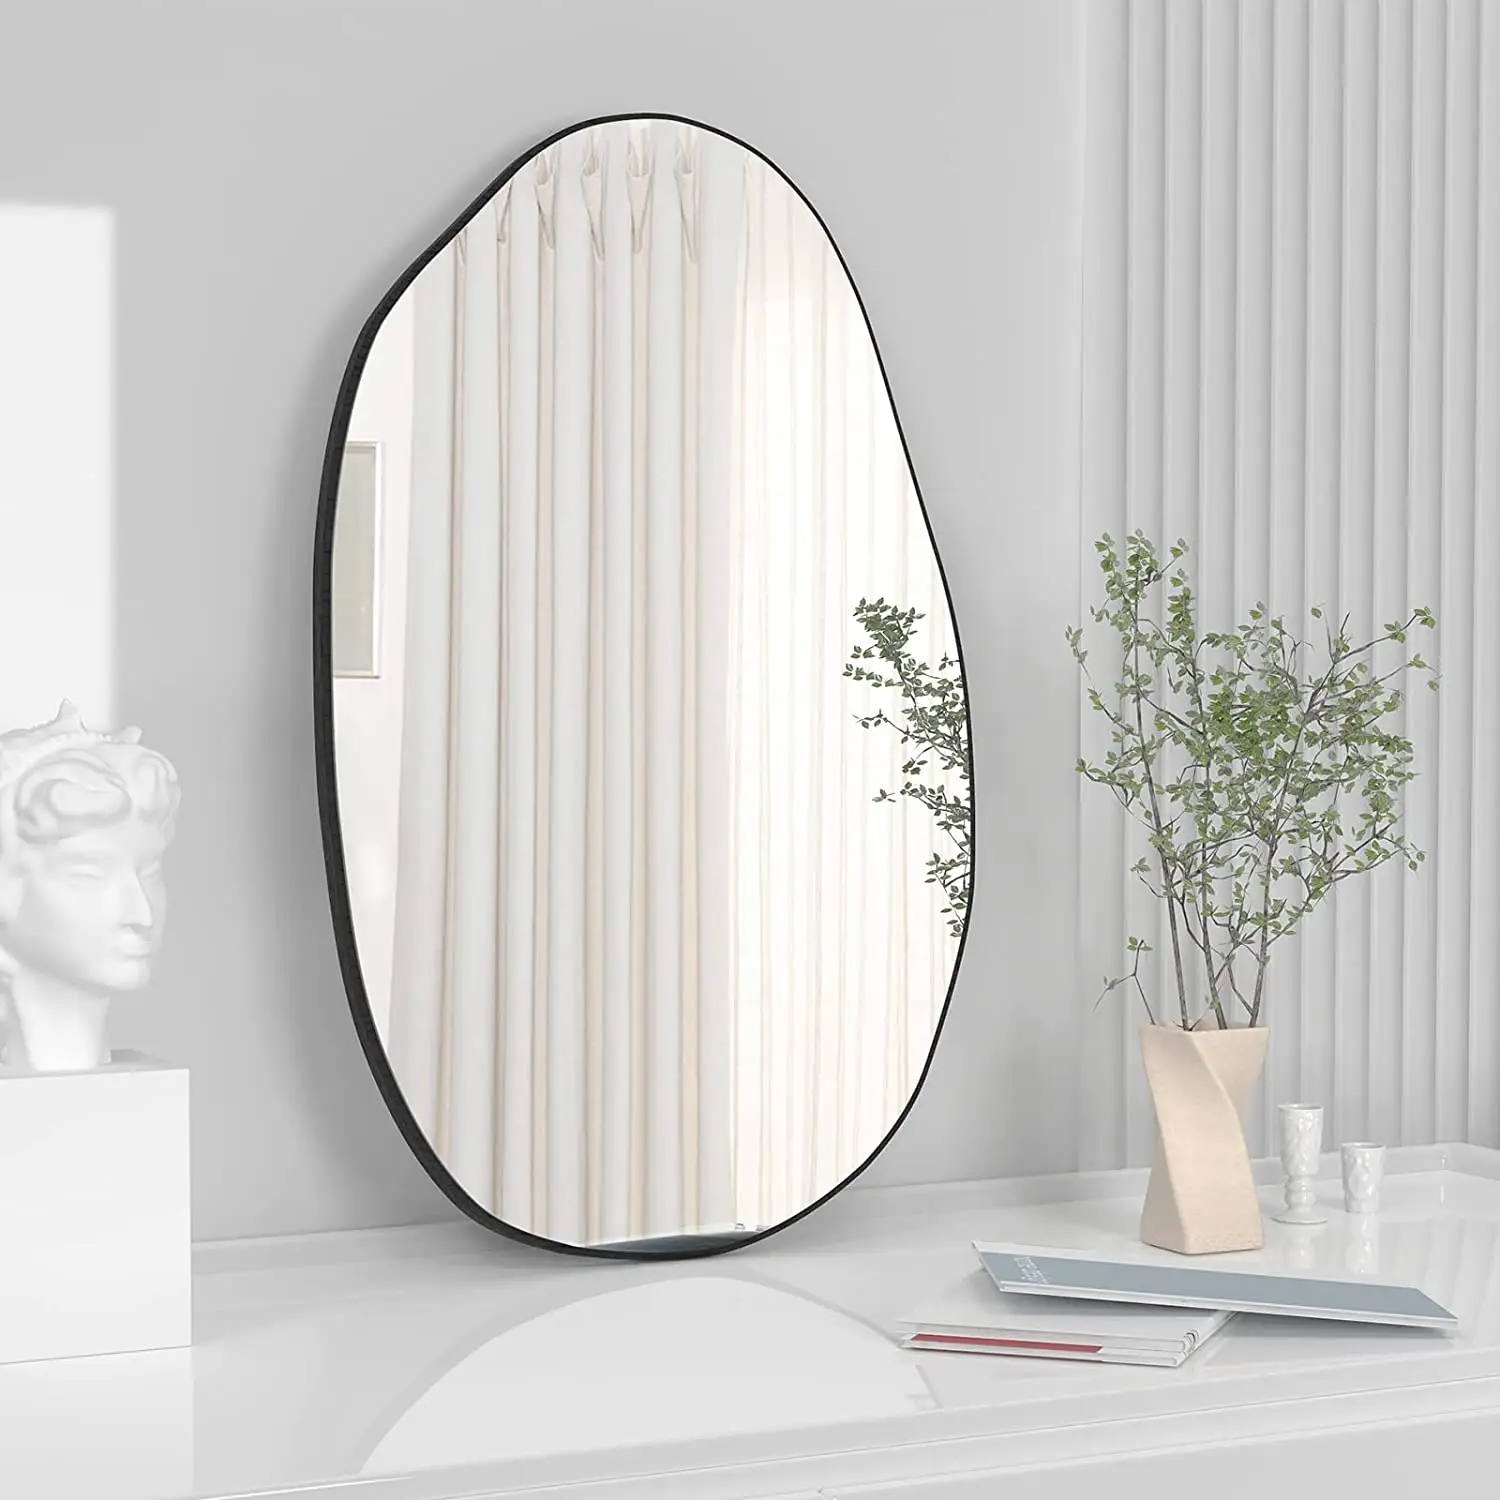 Moderner unregelmäßiger Wand spiegel mit Holzrahmen Asymmetrischer Körpers piegel Großer Kosmetik spiegel für die Wand dekoration